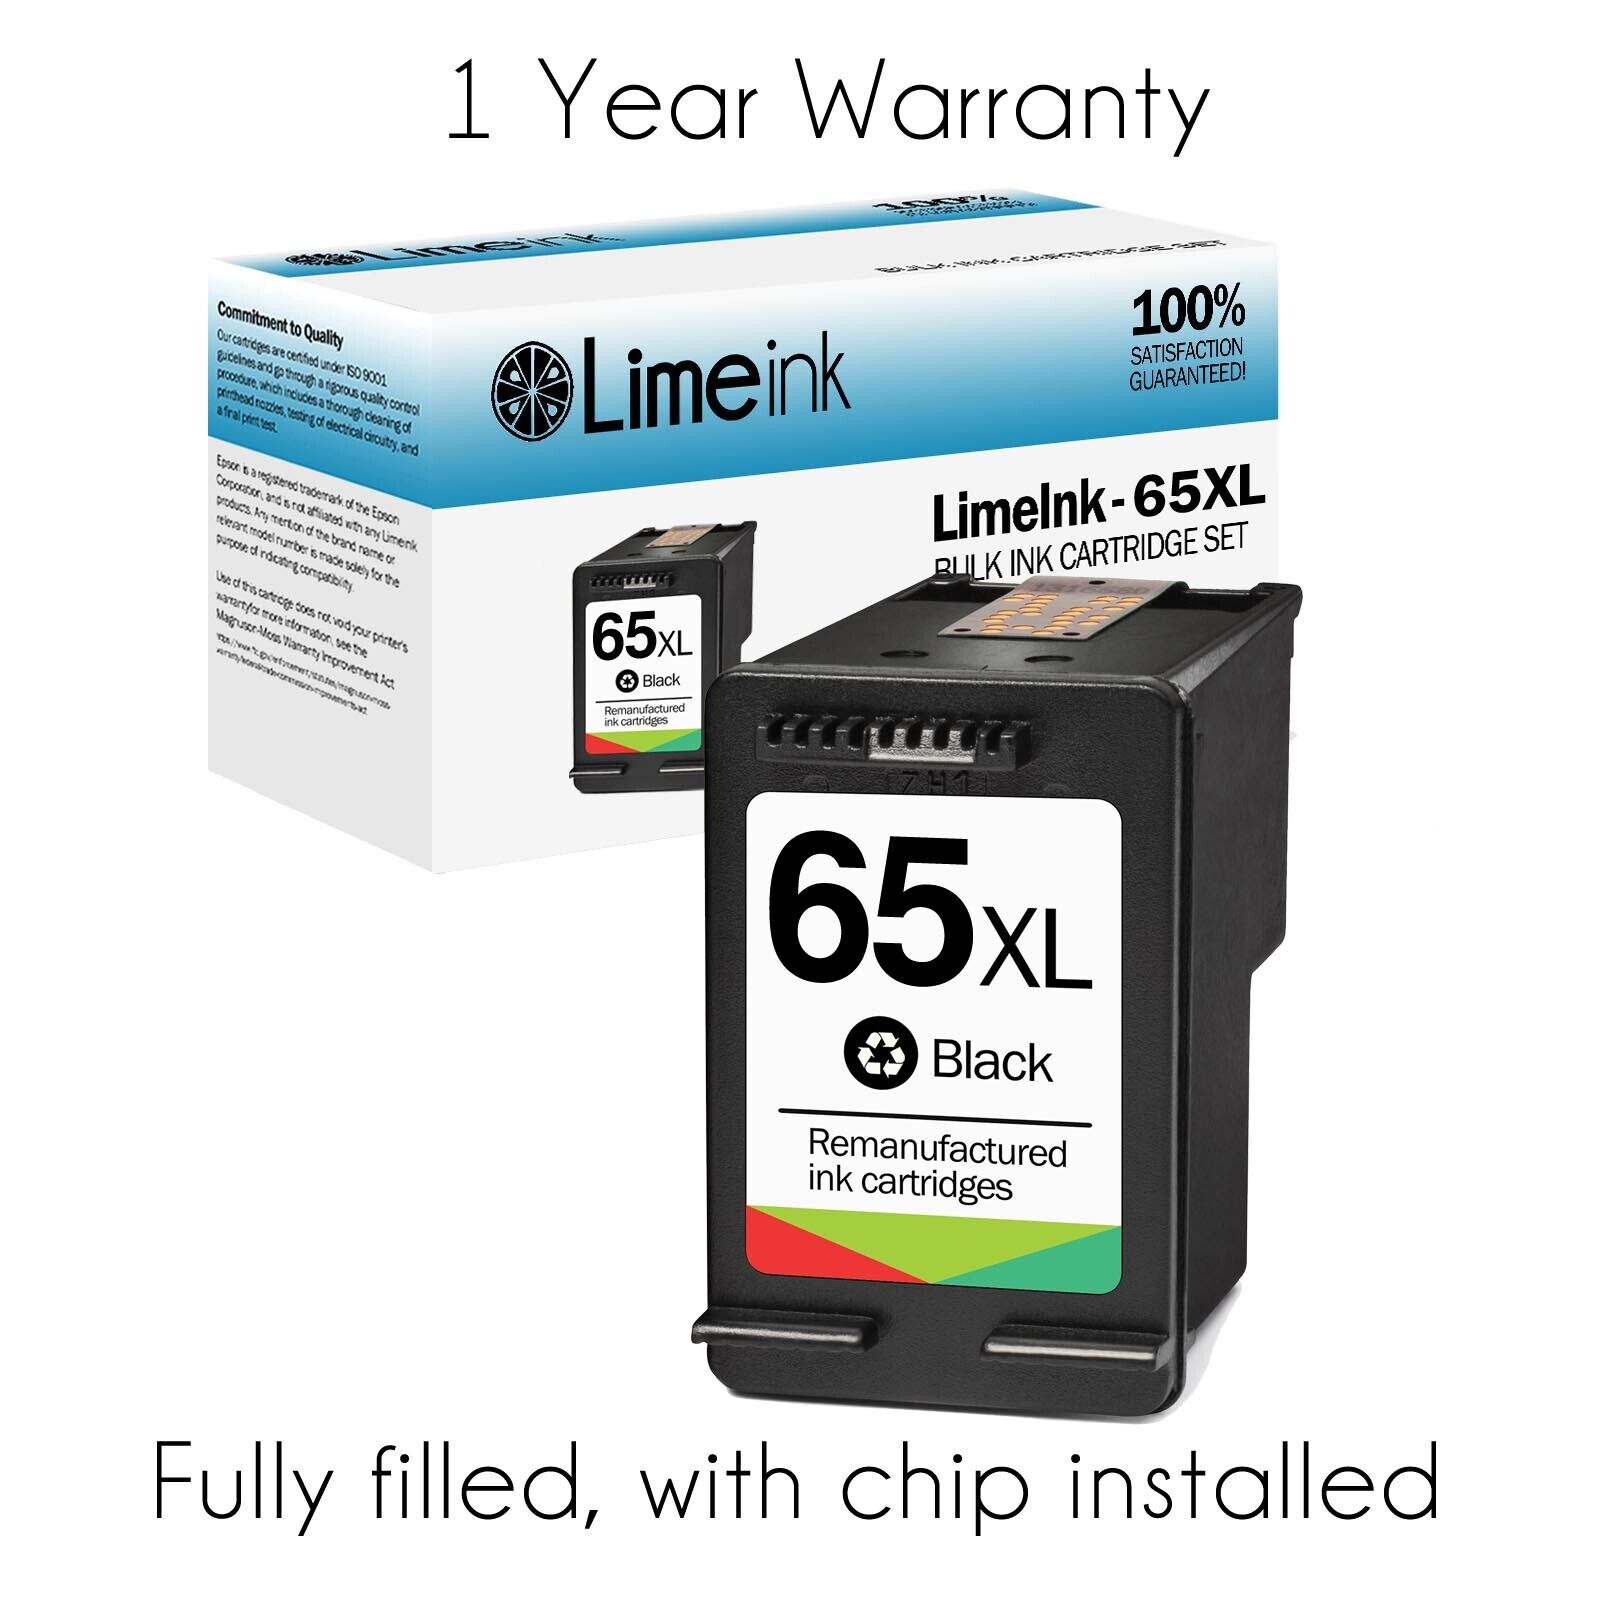 Used 65XL Ink Cartridges for HP Deskjet 2600 2622 2652 3755 ENVY 5052 ...